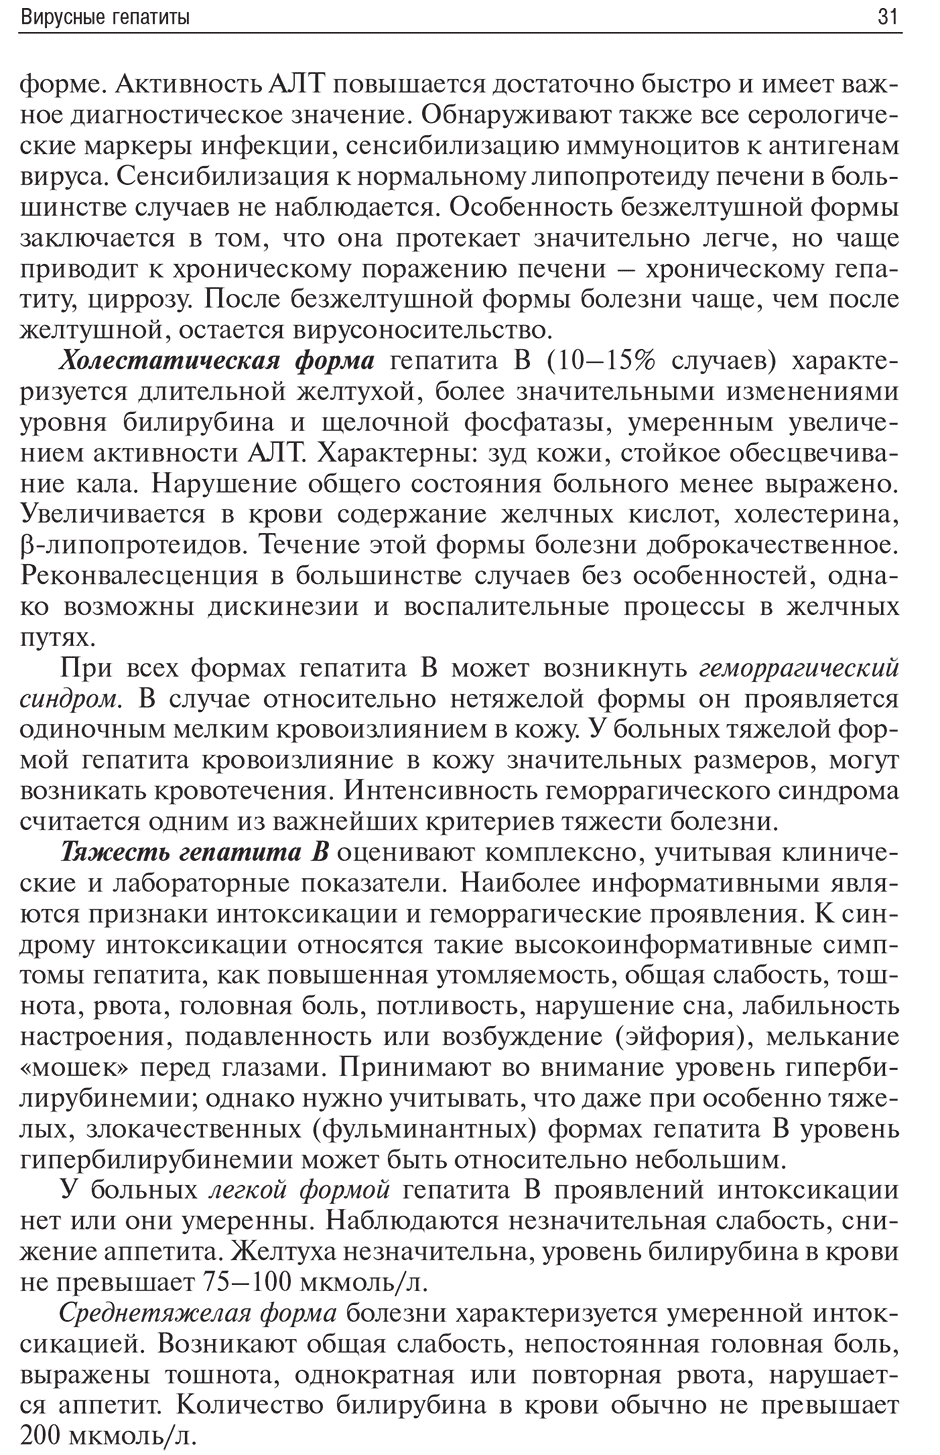 Пример страницы из книги "Инфекционные болезни и беременность" - Климов В. А.